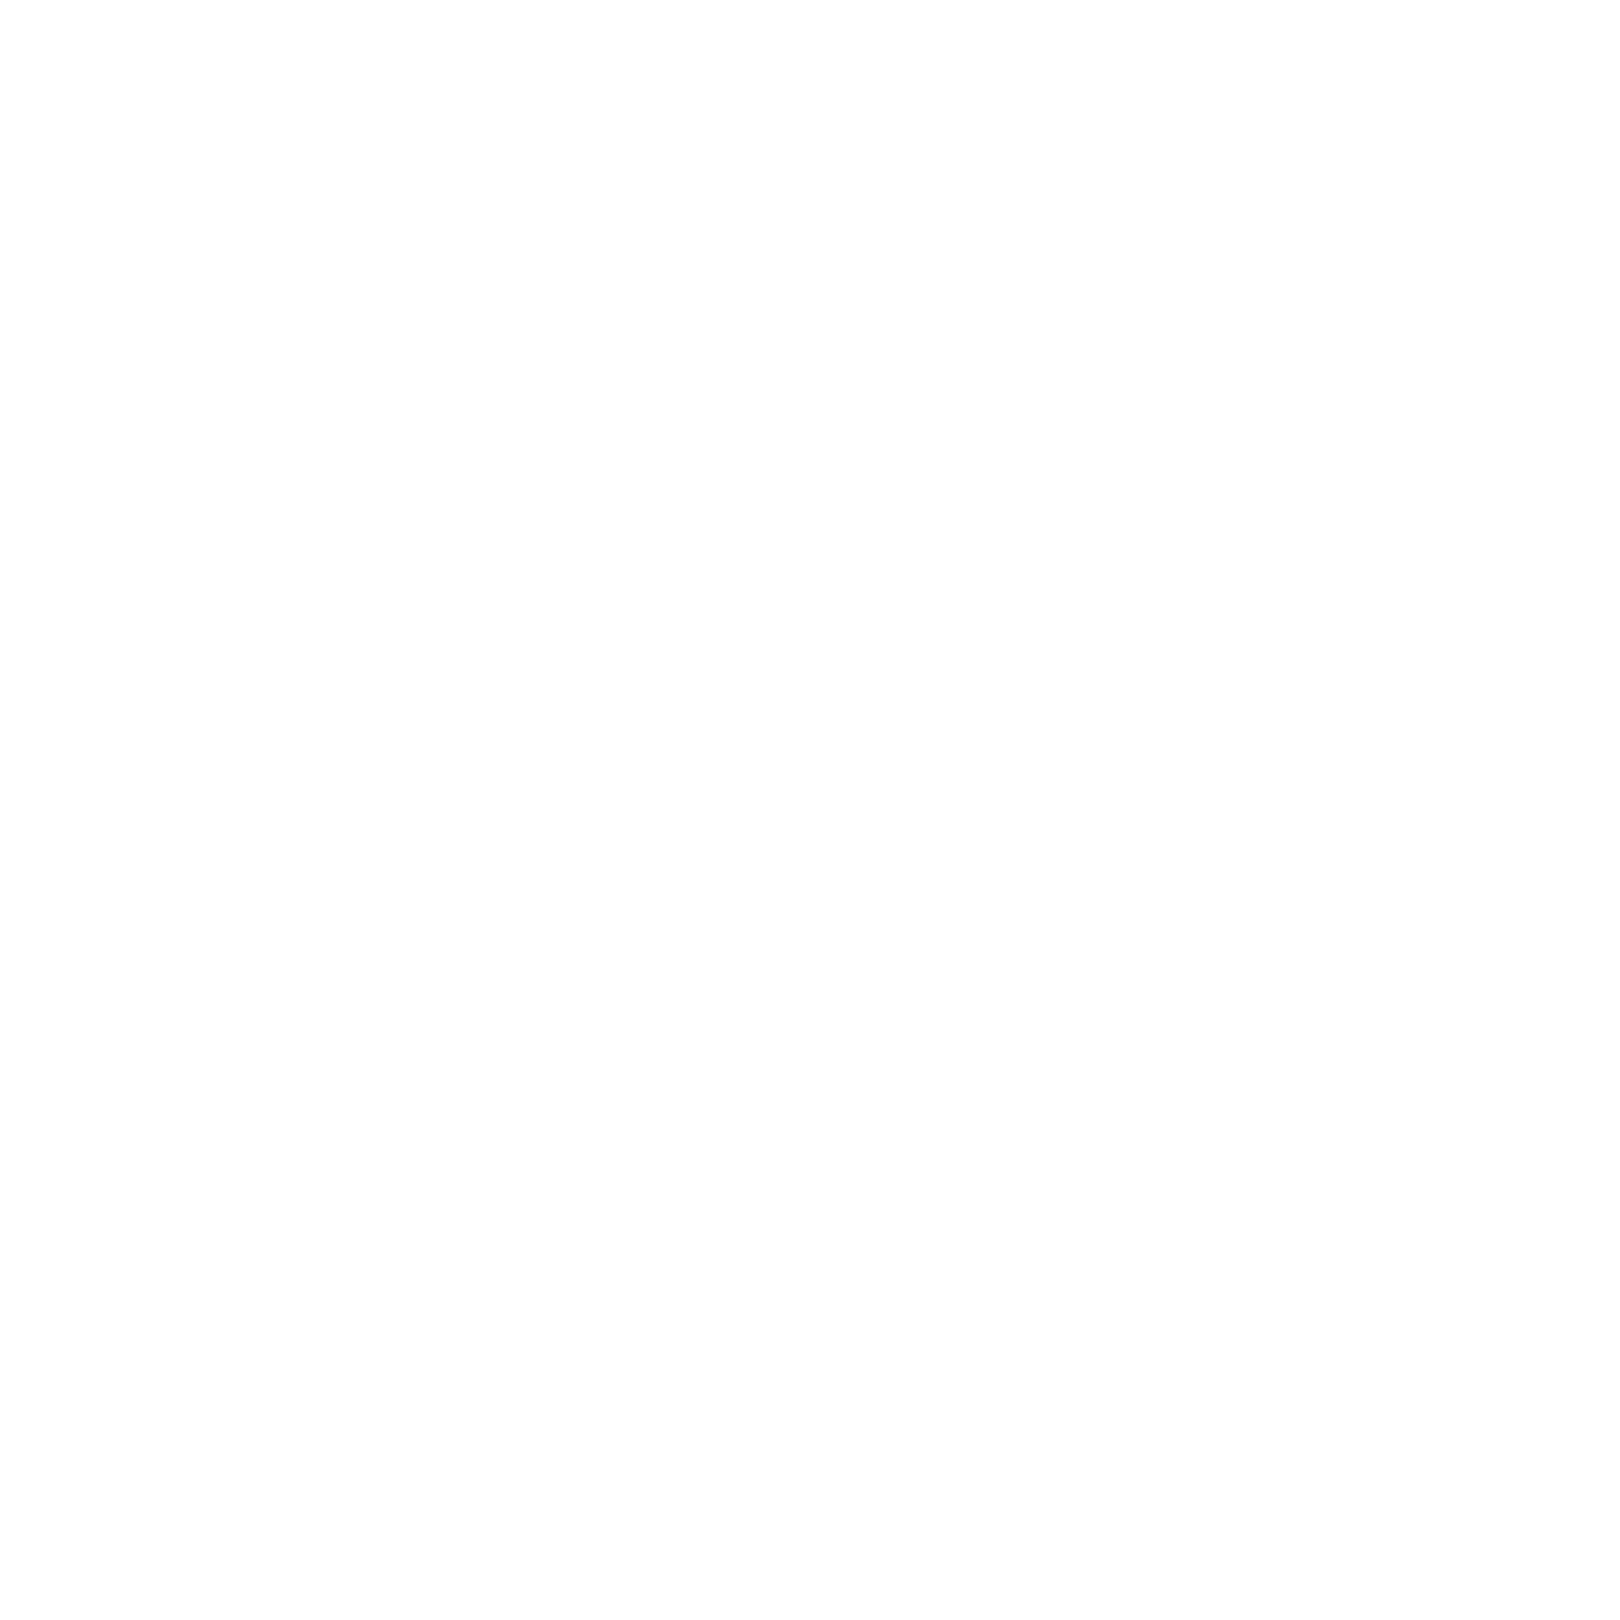 Månen sover om natten